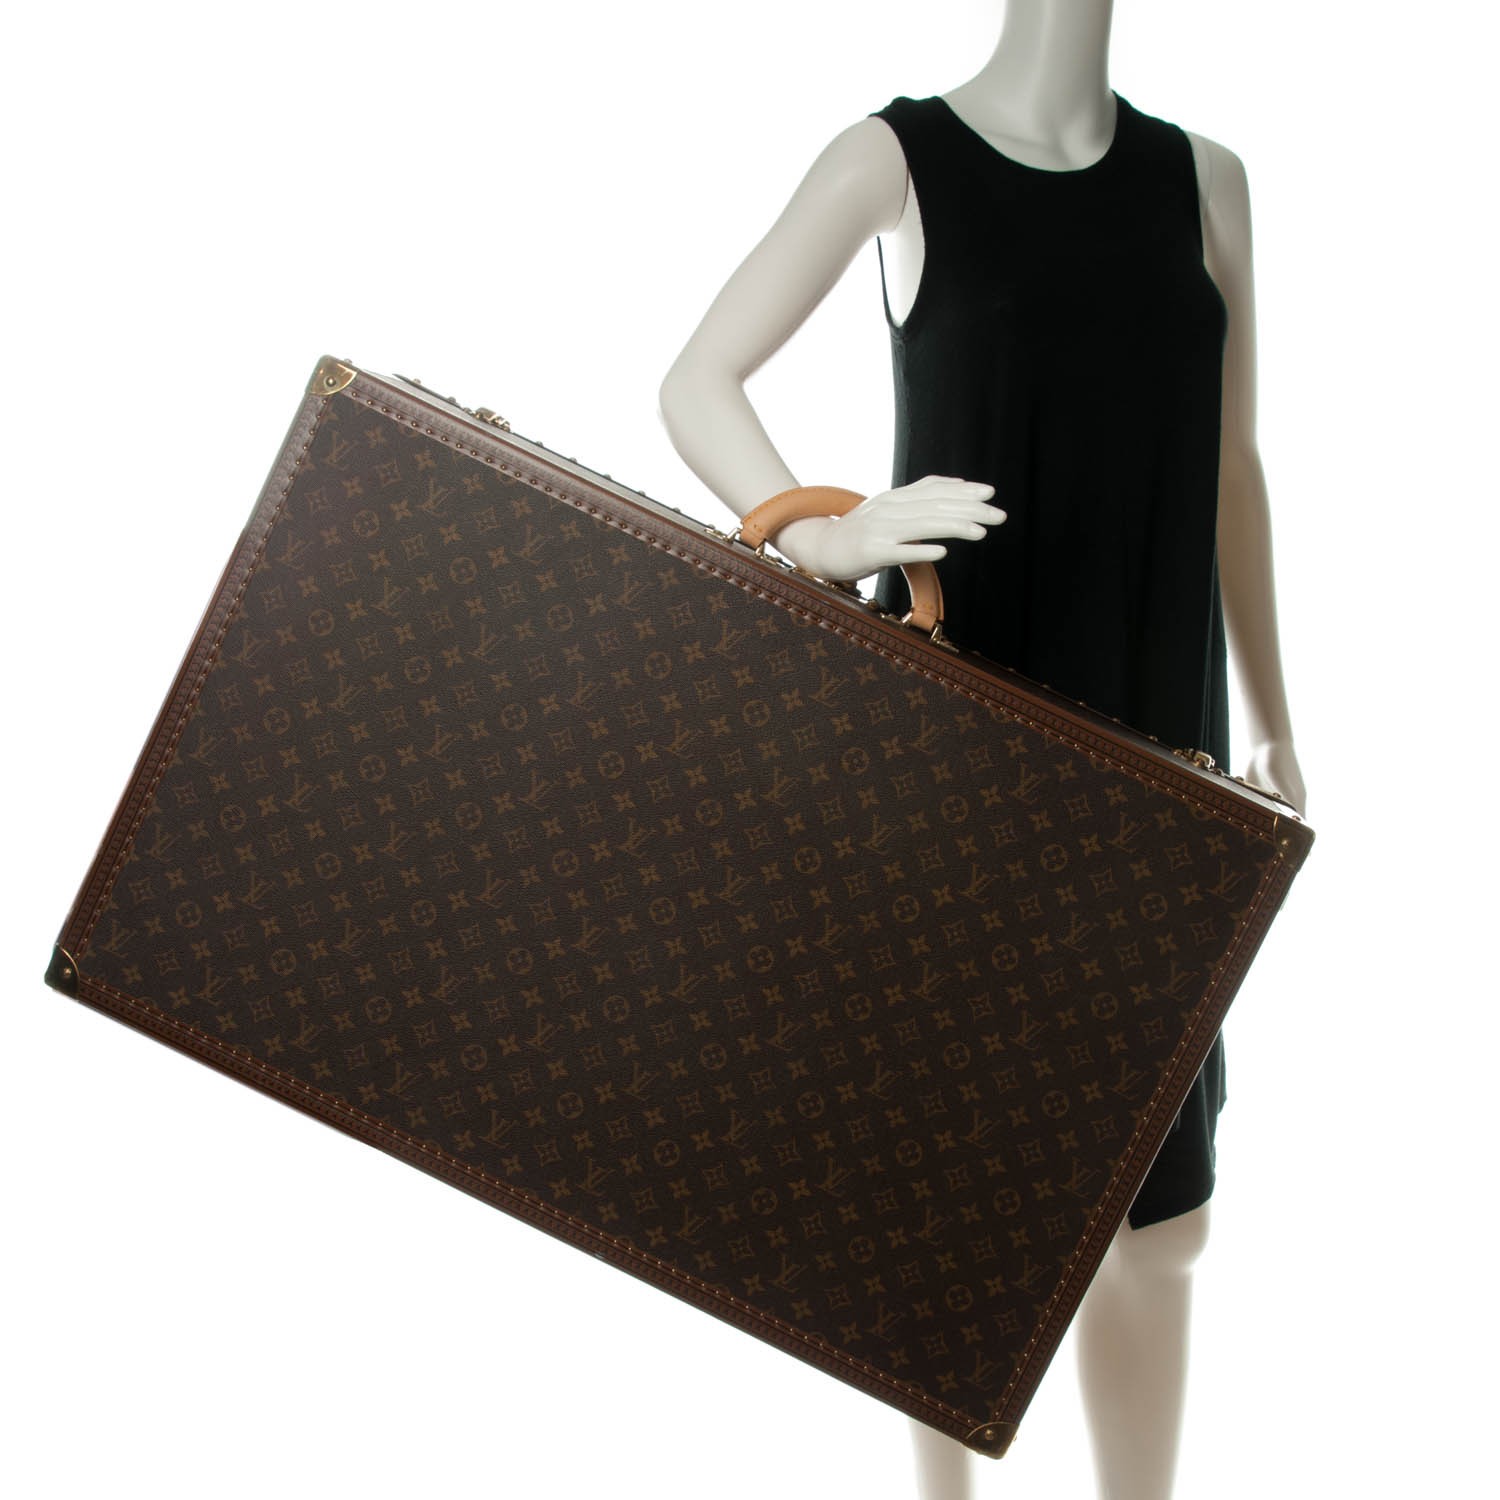 Louis Vuitton Neverfull Handbag - Only $235.99!